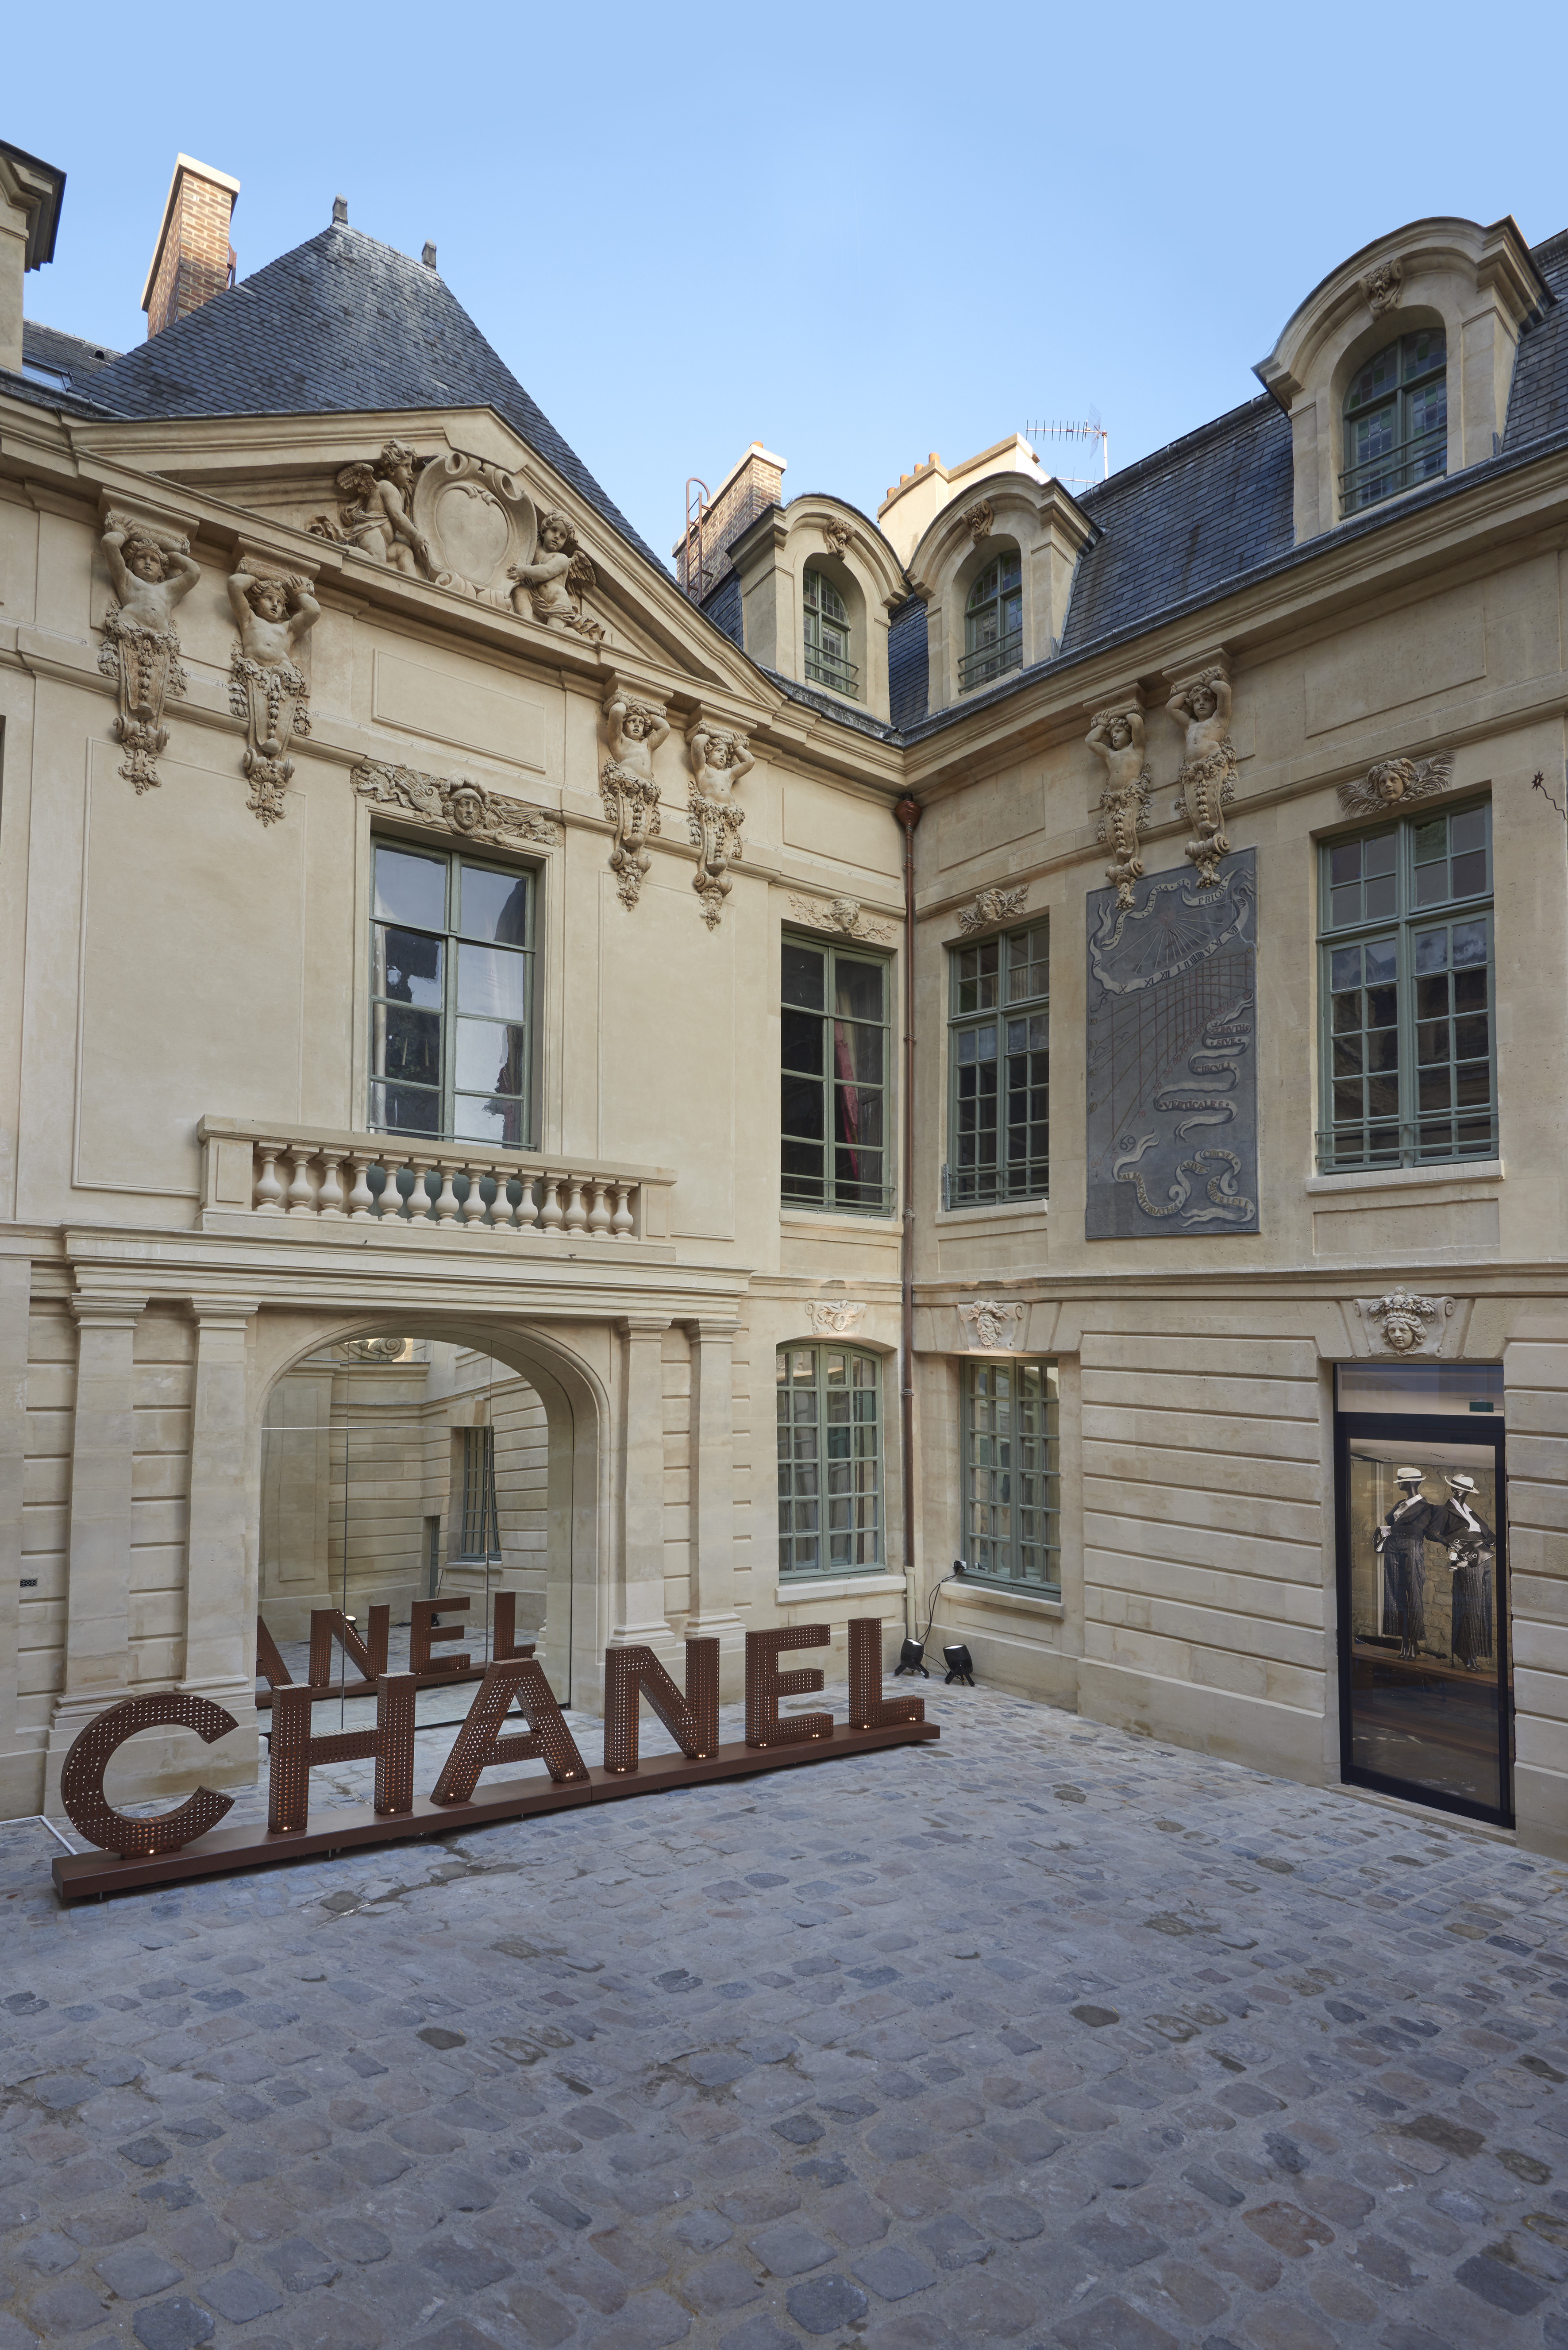 Chanel opens pop-up stores in Le Marais, Paris